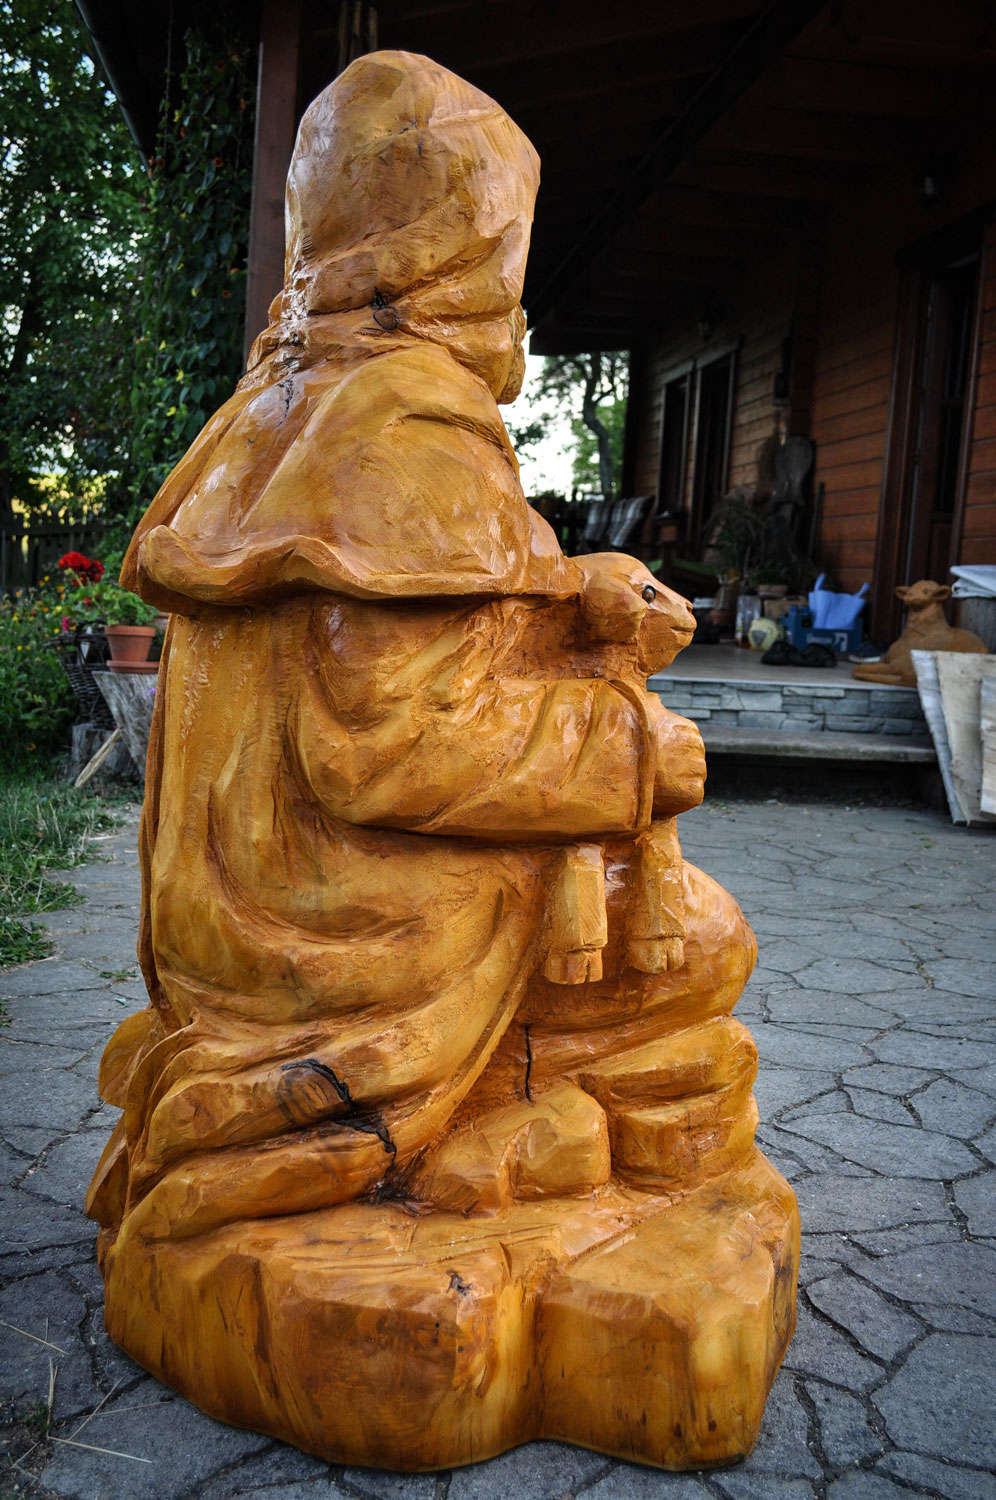 drevorezba-vyrezavani-carving-wood-drevo-socha-figura-betlem_pastyr-radekzdrazil-20220815-04